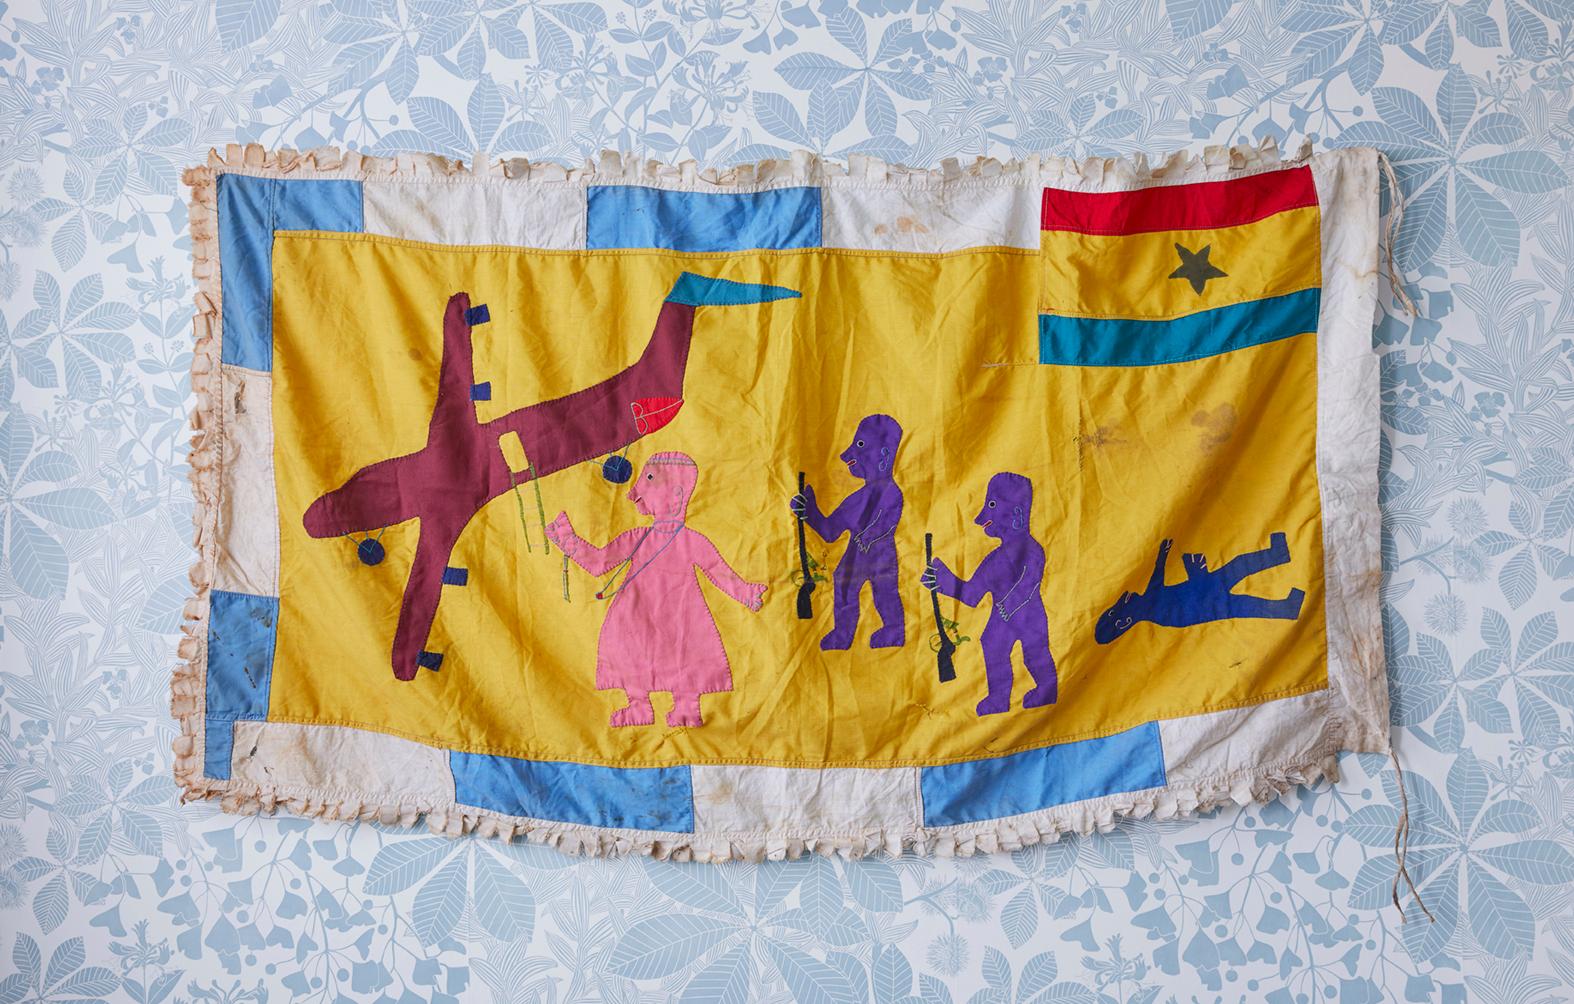 Ghana, 1980er Jahre

Asafo-Flagge mit Baumwollapplikationen. Das Volk der Fante.

Asafo-Flaggen werden vom Volk der Fante in Ghana hergestellt. Die Flaggen sind visuelle Darstellungen militärischer Organisationen in den Fante-Gemeinschaften, die als